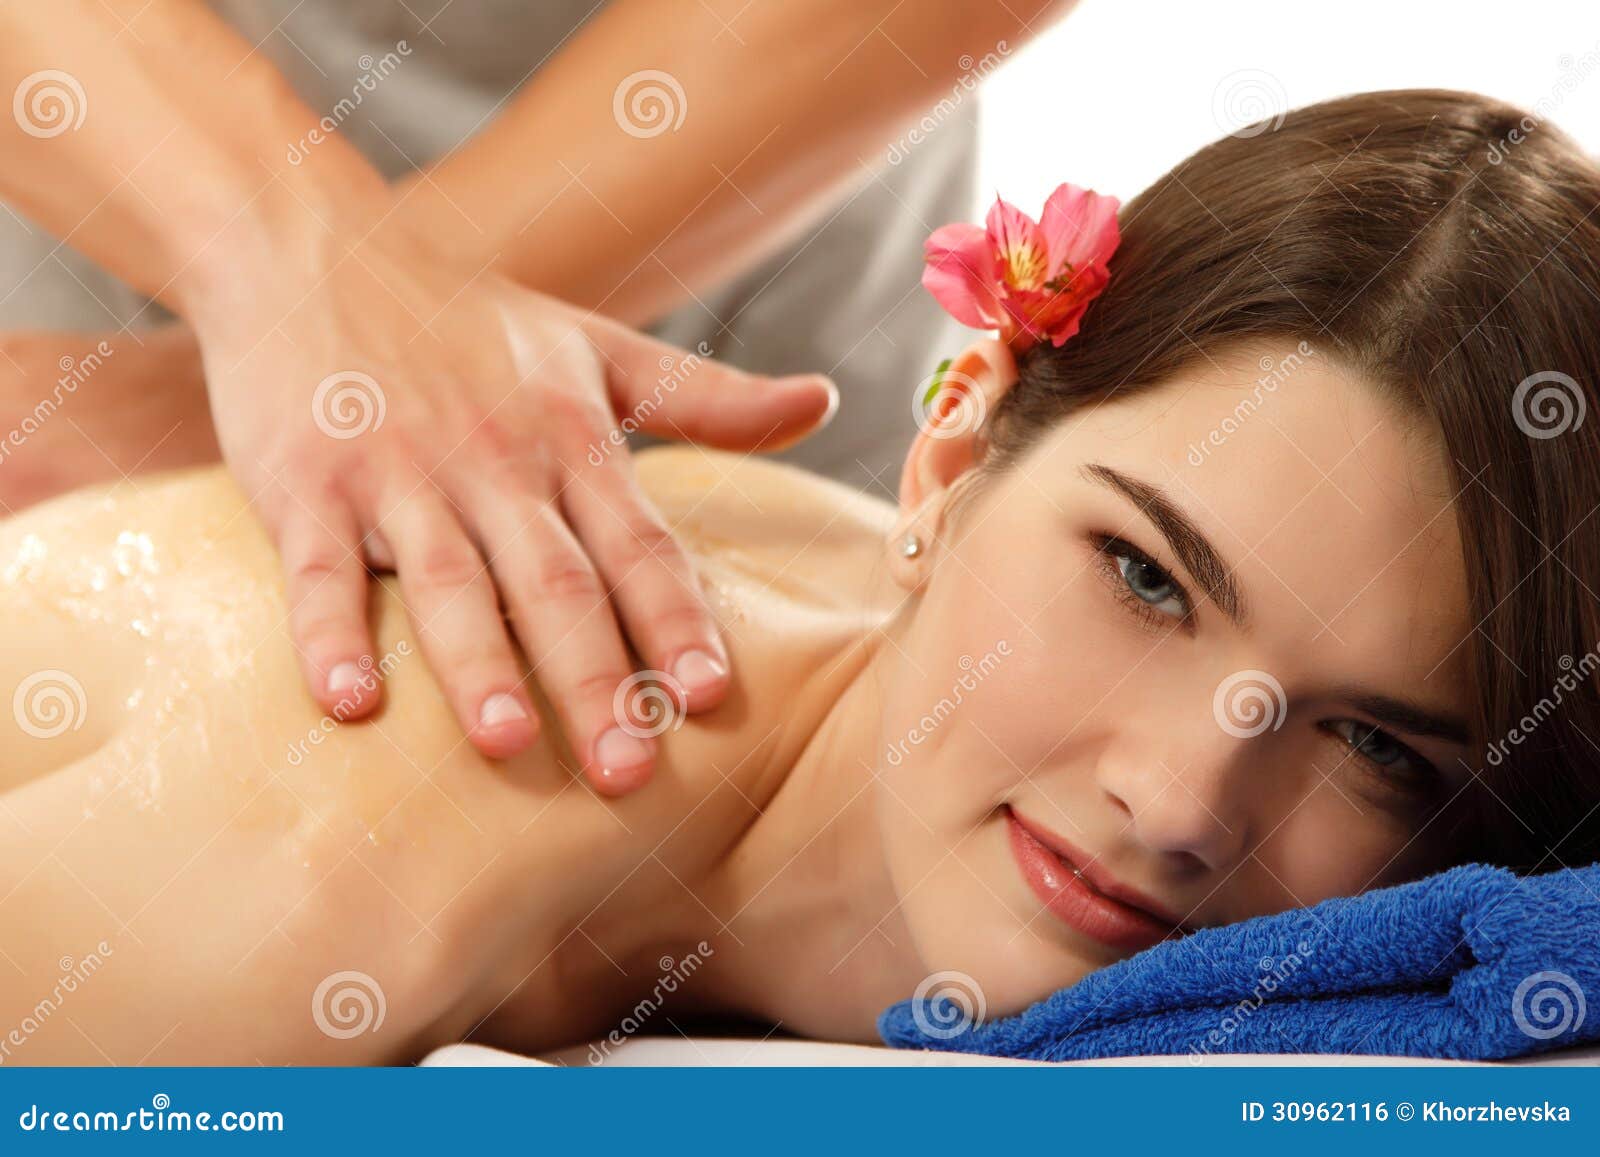 teen massage brunette girl